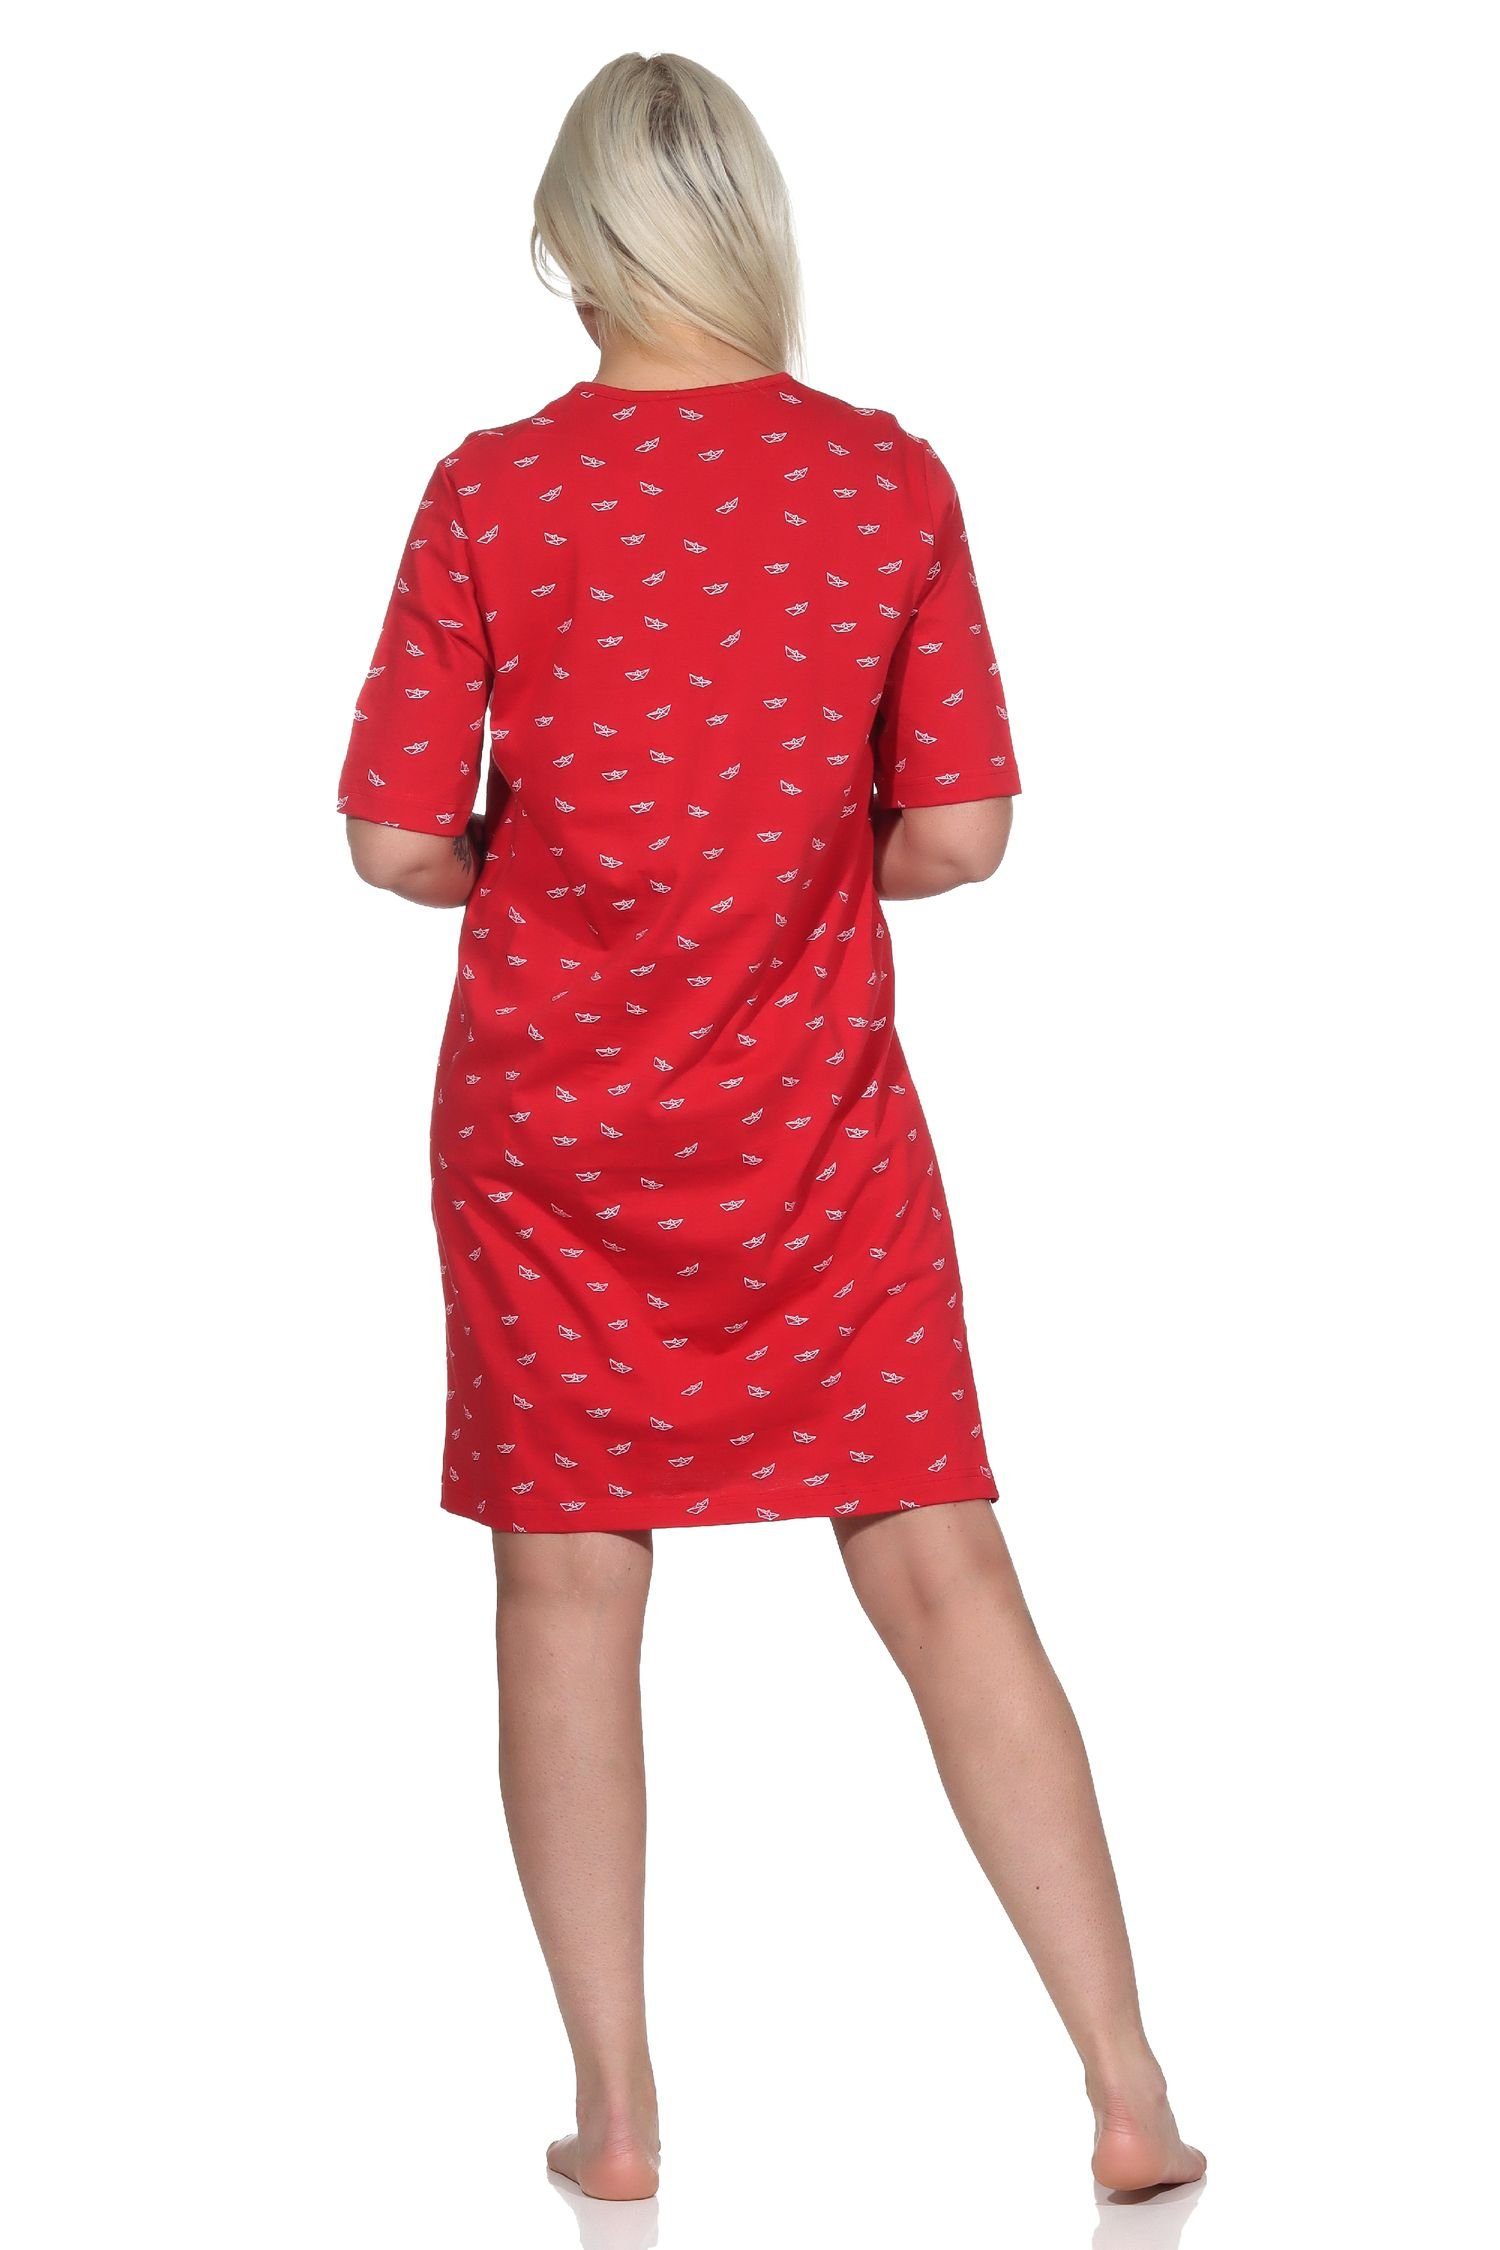 Normann Nachthemd Damen - Nachthemd Übergrössen in maritimer auch rot Optik kurzarm in